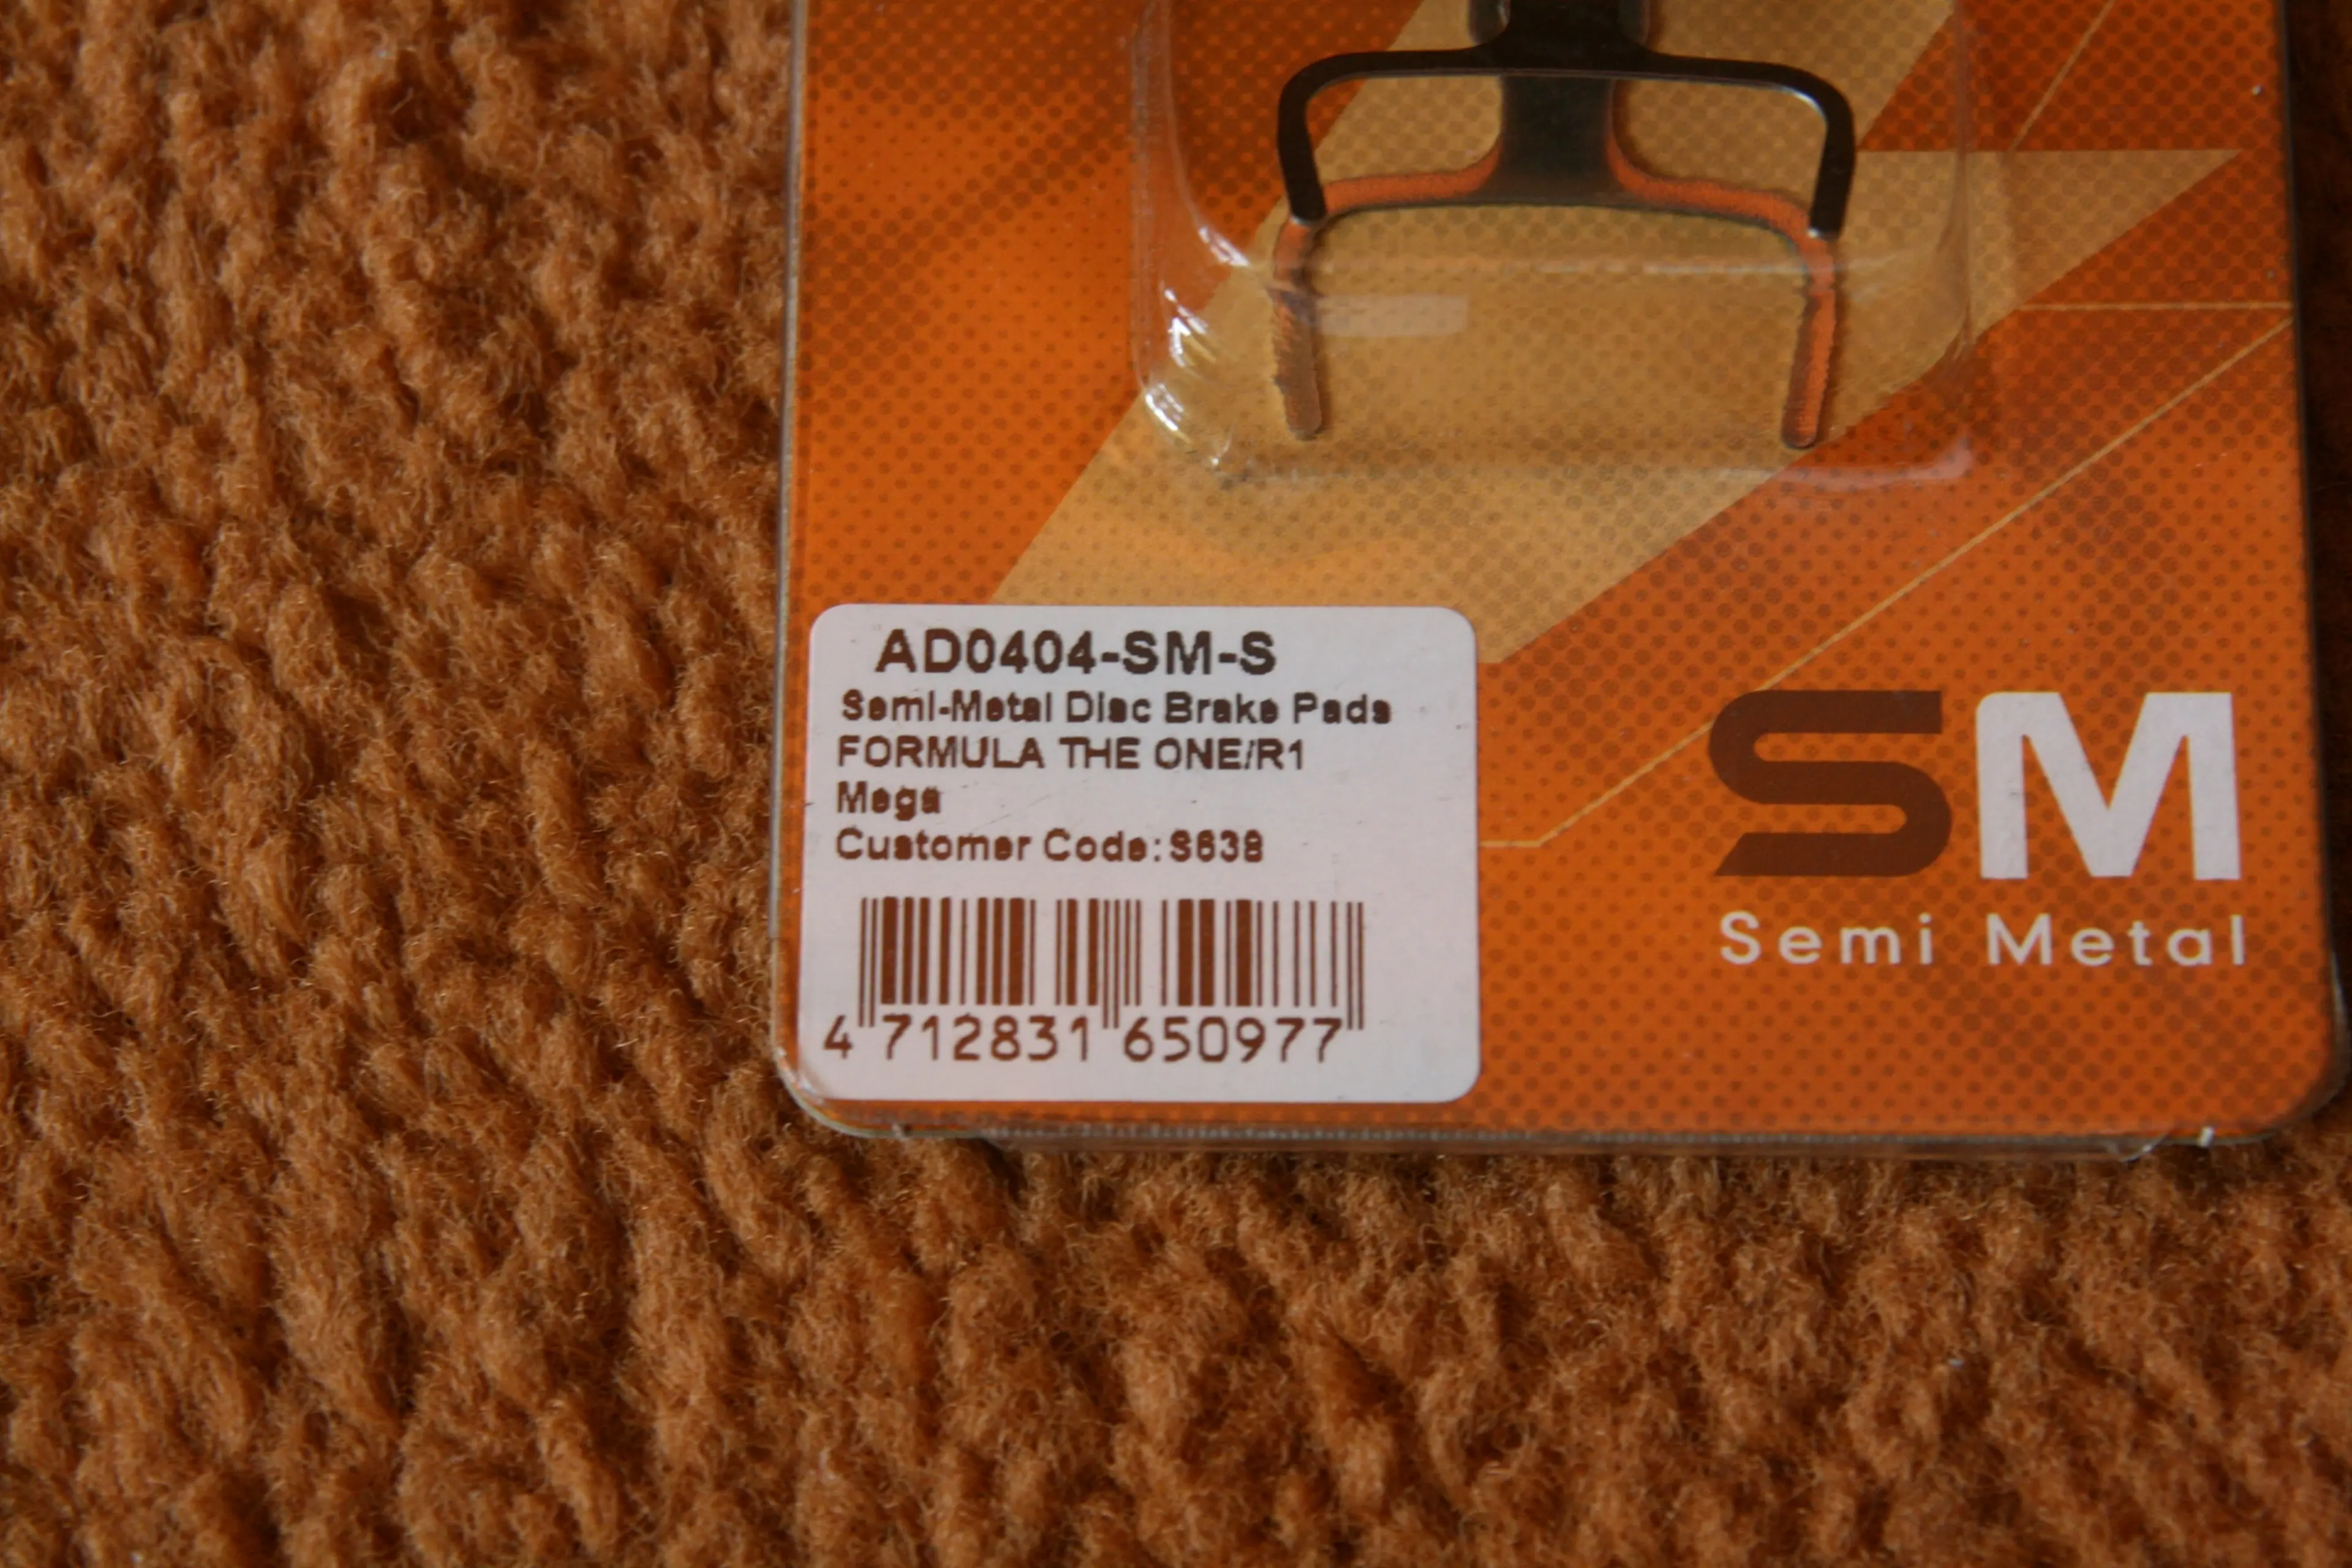 2. Placute frane disc Ashima semi metalice - Formula The One / Mega / R1